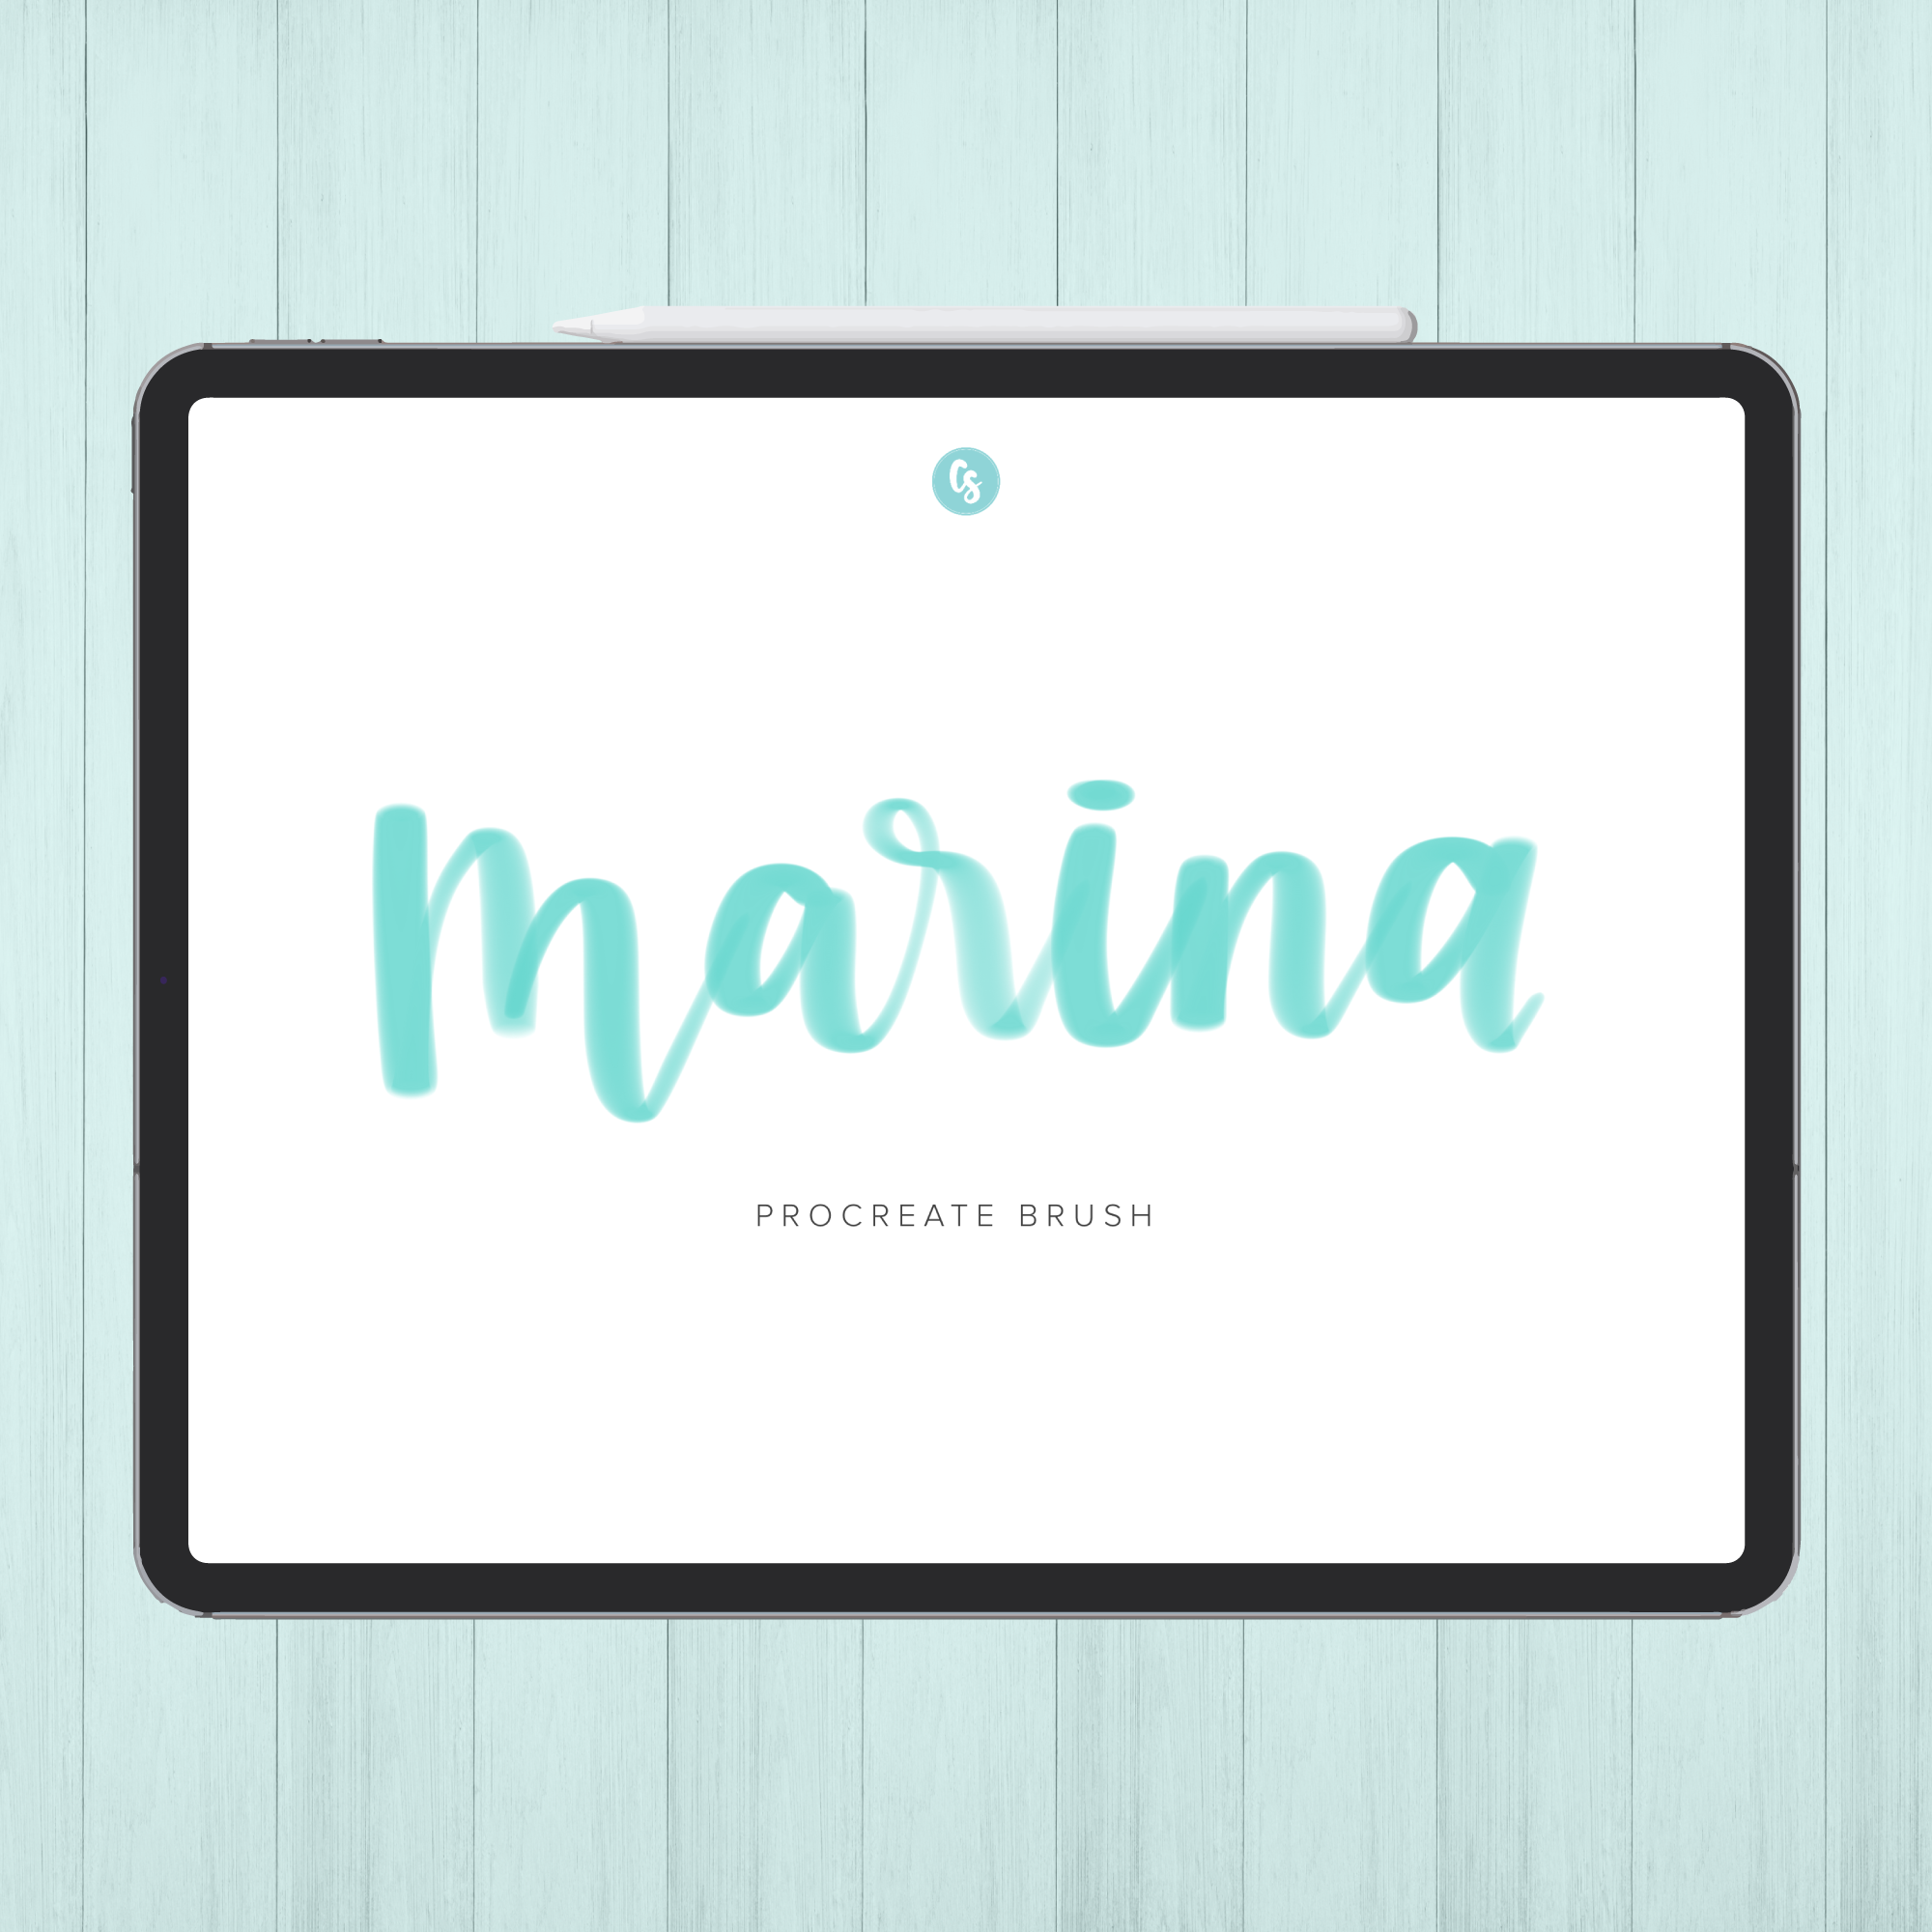 Marina Watercolor Procreate Brush